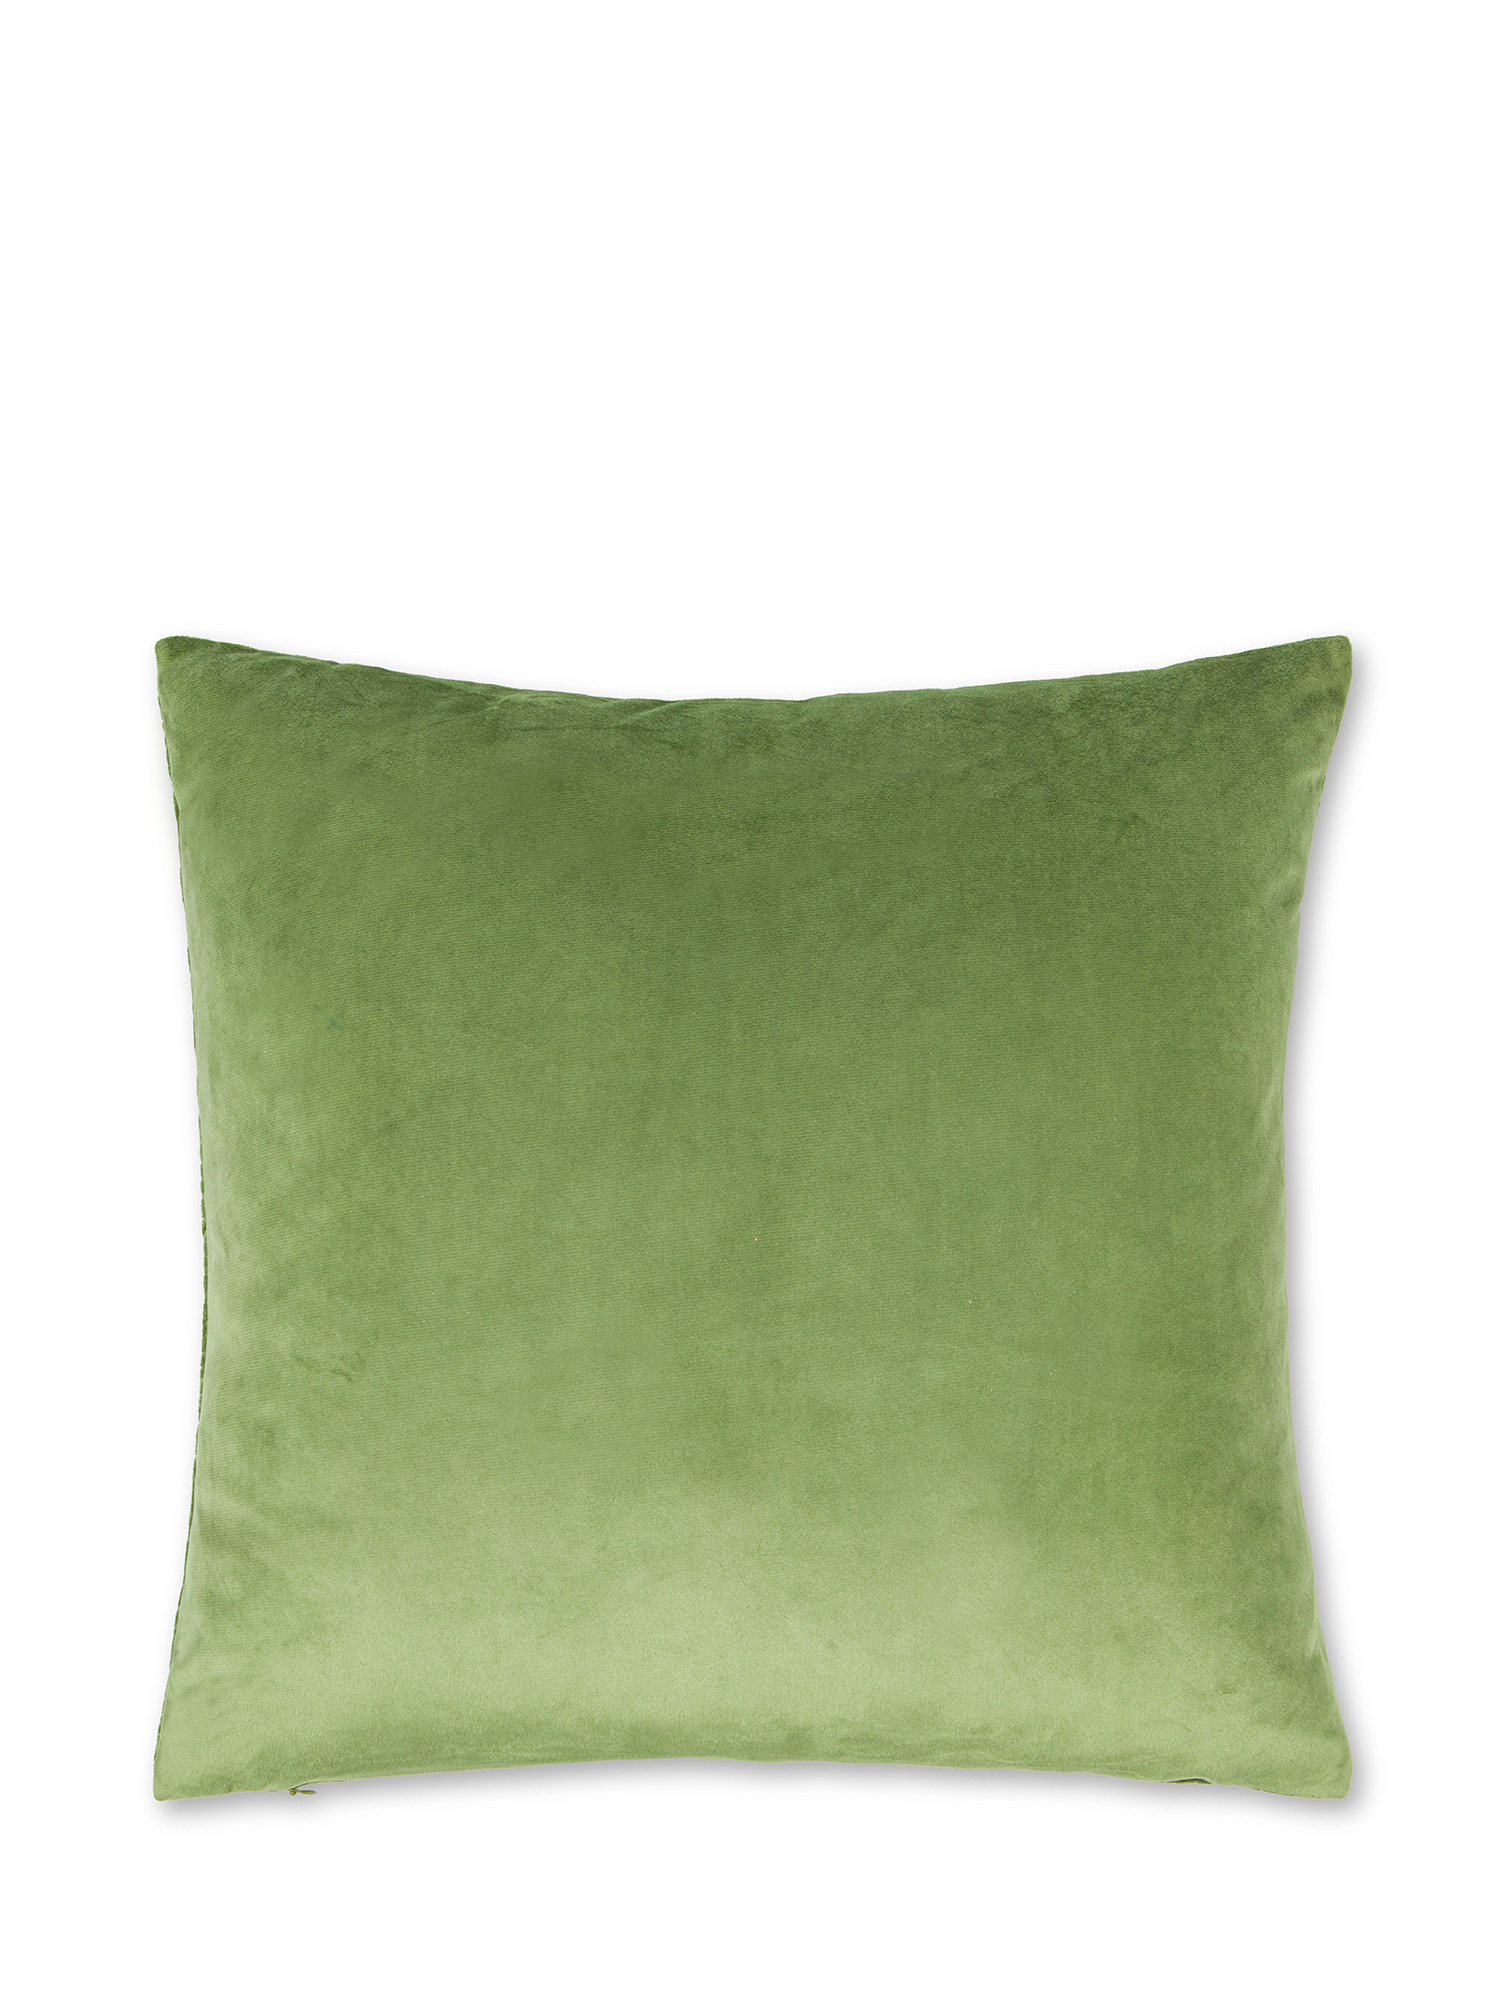 Cuscino velluto quilt tinta unita 45X45cm, Verde, large image number 1